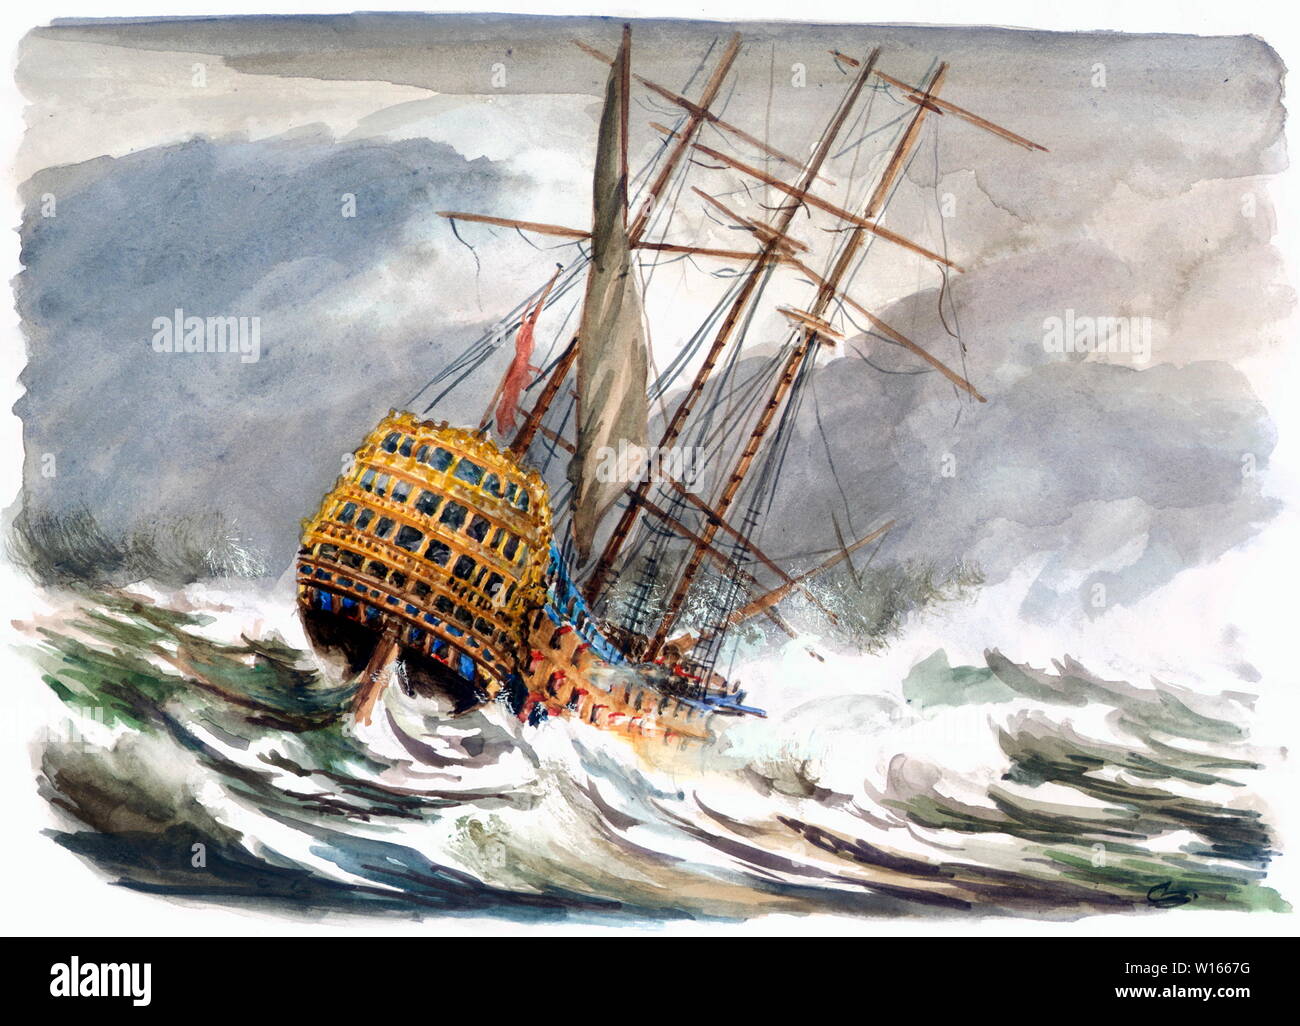 AJAXNTPHOTO. 1744-2008 - das Flaggschiff Wrack entdeckt - Admiral Sir John BALCHEN'S FLAGGSCHIFF HMS VICTORY, 6 TH KRIEGSSCHIFF DER NAME, war lange geglaubt zu haben STRUCK CASQUETS FELSEN, westlich von Alderney, Channel Islands, während ein heftiger Sturm am Abend des 4. Oktober, 1744. Folgende ENTDECKUNG DURCH DIE US-ODYSSSEY MARINE EXPLORATION INC. GEFUNDEN DAS WRACK BLEIBT IM SÜDEN DER GRAFSCHAFT DEVON PORT SALCOMBE 2008 haben fast 60 Meilen (100 km) vom ursprünglichen Speicherort gedacht zu haben, die WRECKSITE. ursprüngliche Abbildung © Caroline Beaumont. REF: 1744 Wrack Stockfoto